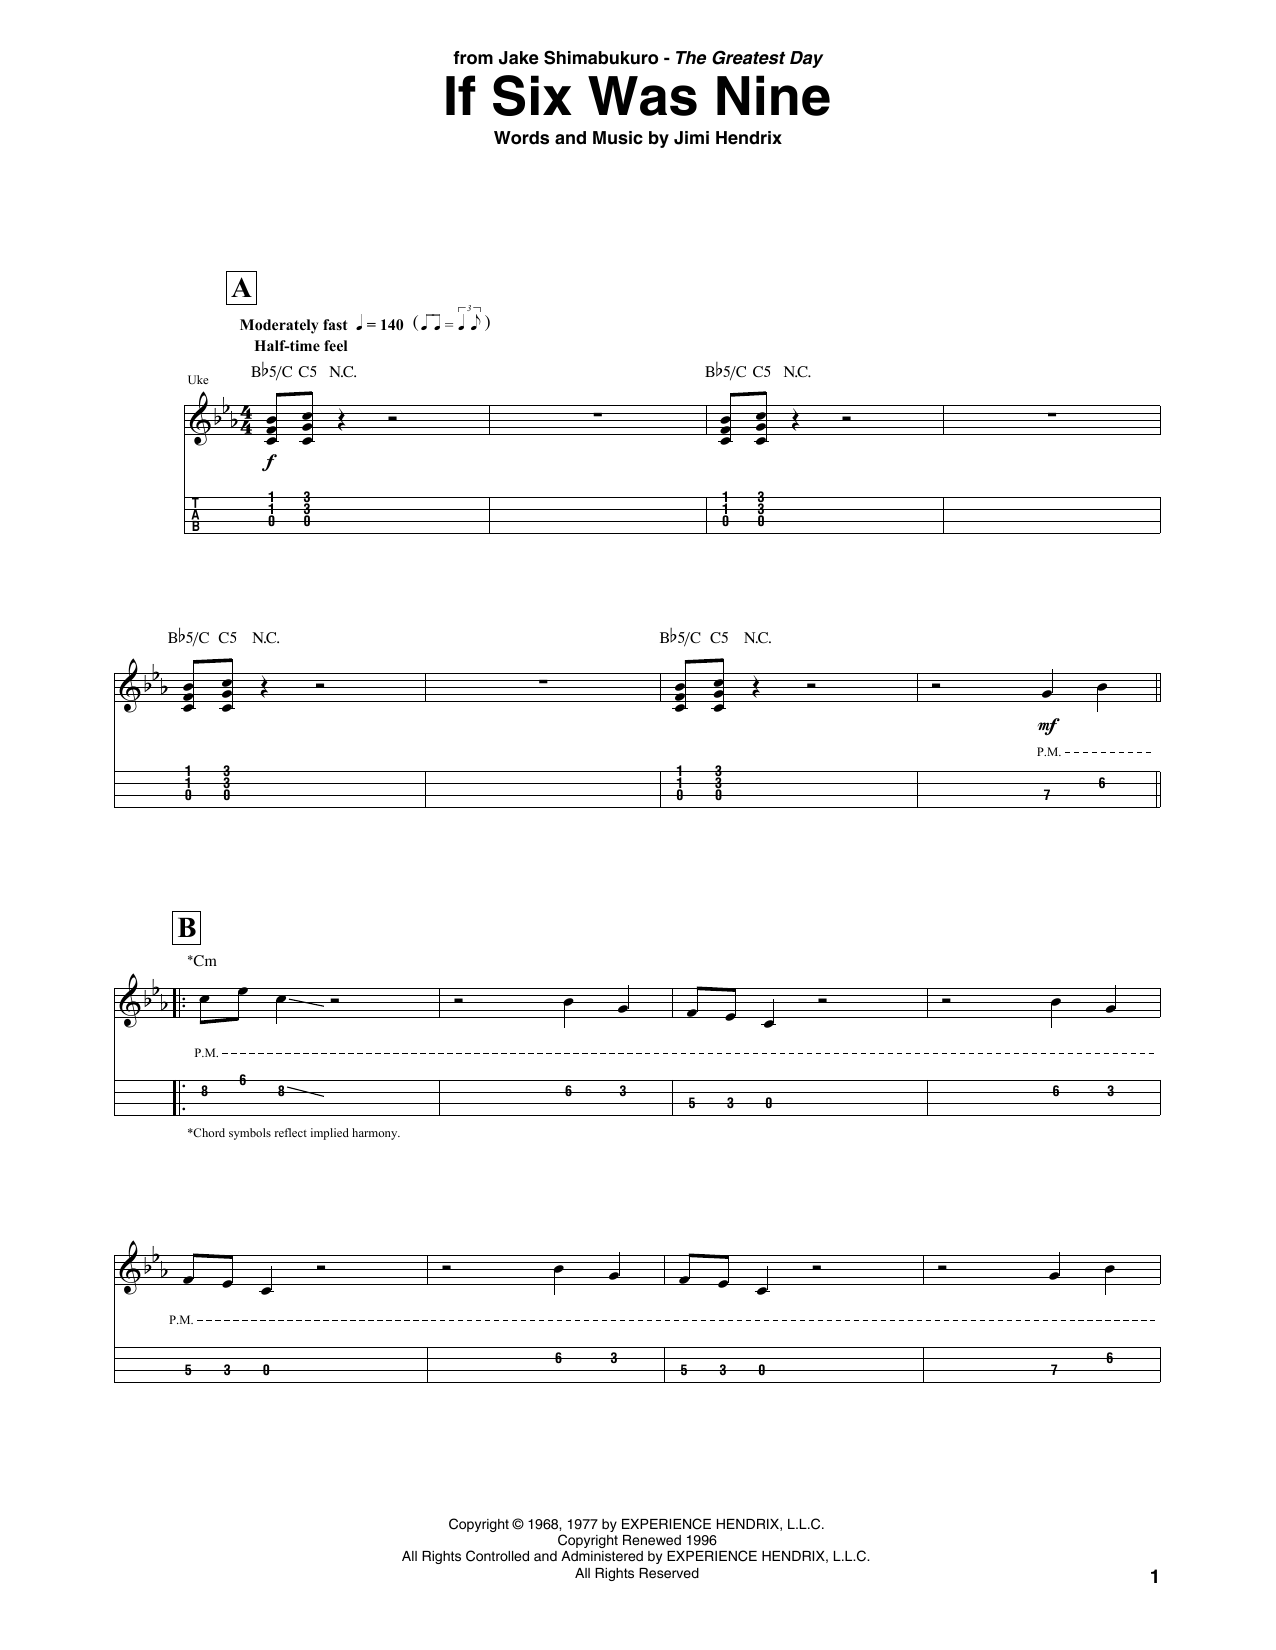 Jimi Hendrix If Six Was Nine (arr. Jake Shimabukuro) Sheet Music Notes & Chords for UKETAB - Download or Print PDF